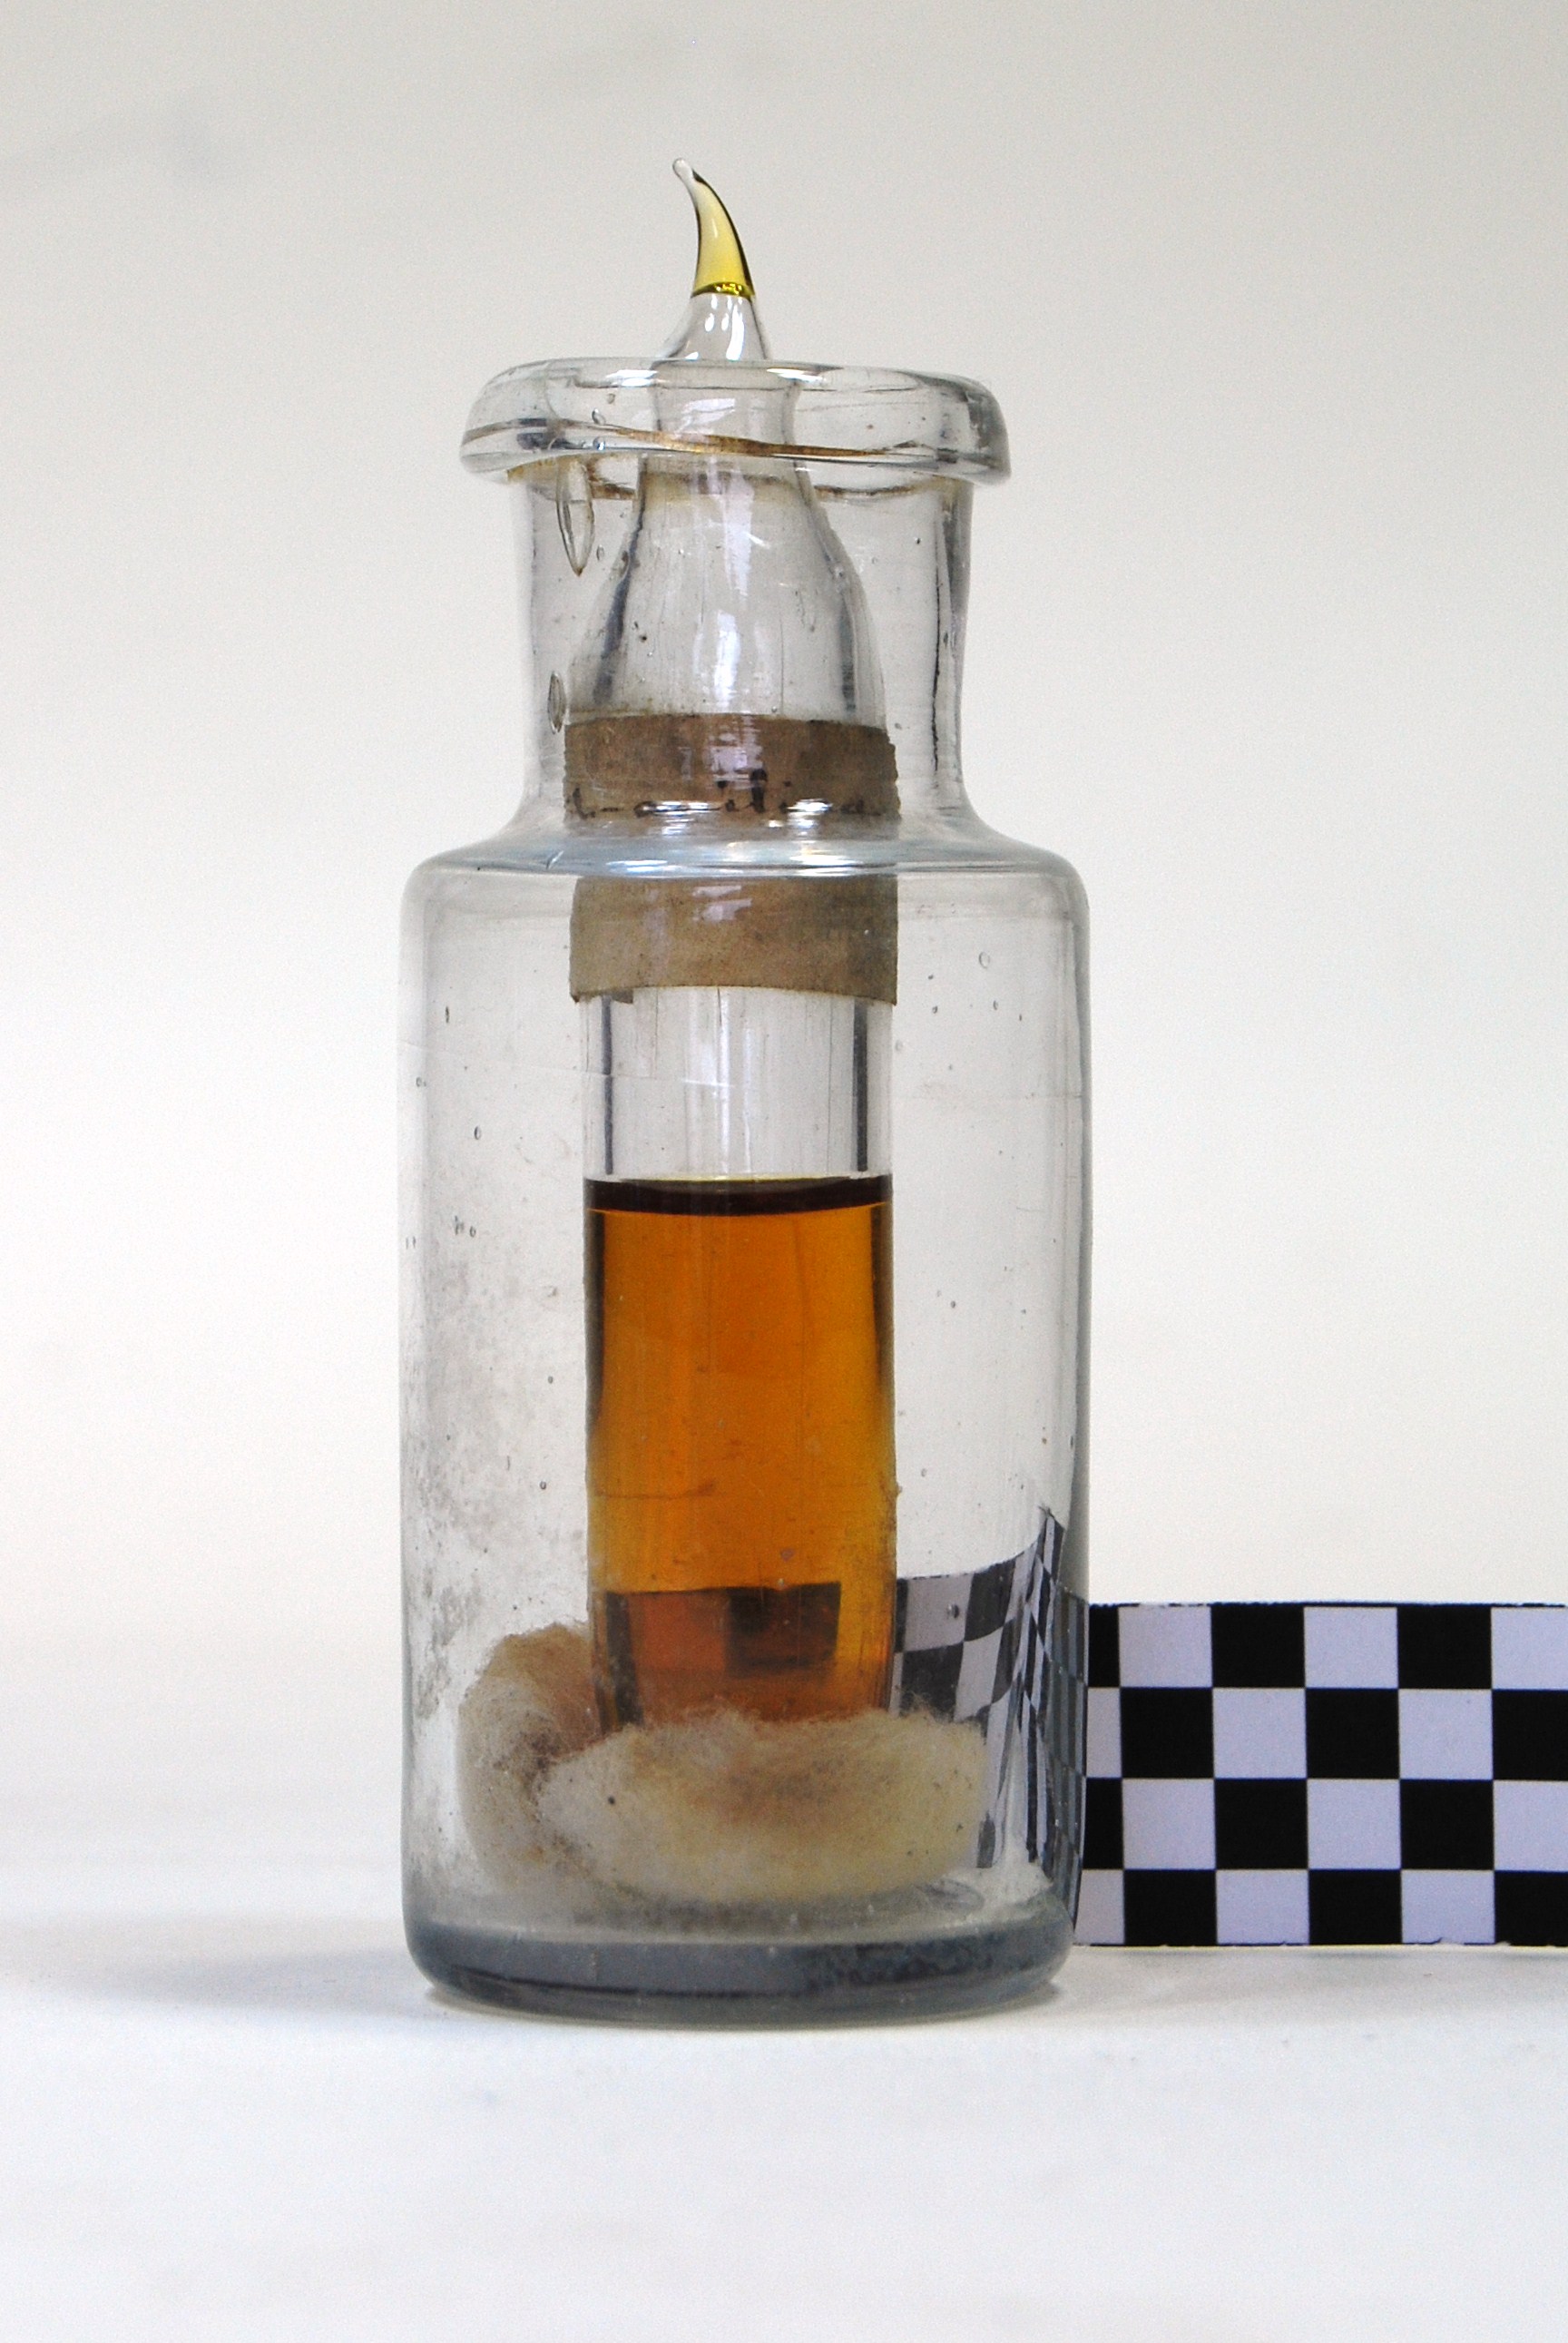 allilanilina (prodotto chimico, di sintesi) di Ugo Schiff (laboratorio) - scuola chimica fiorentina (metà/ inizio XIX/ XX)